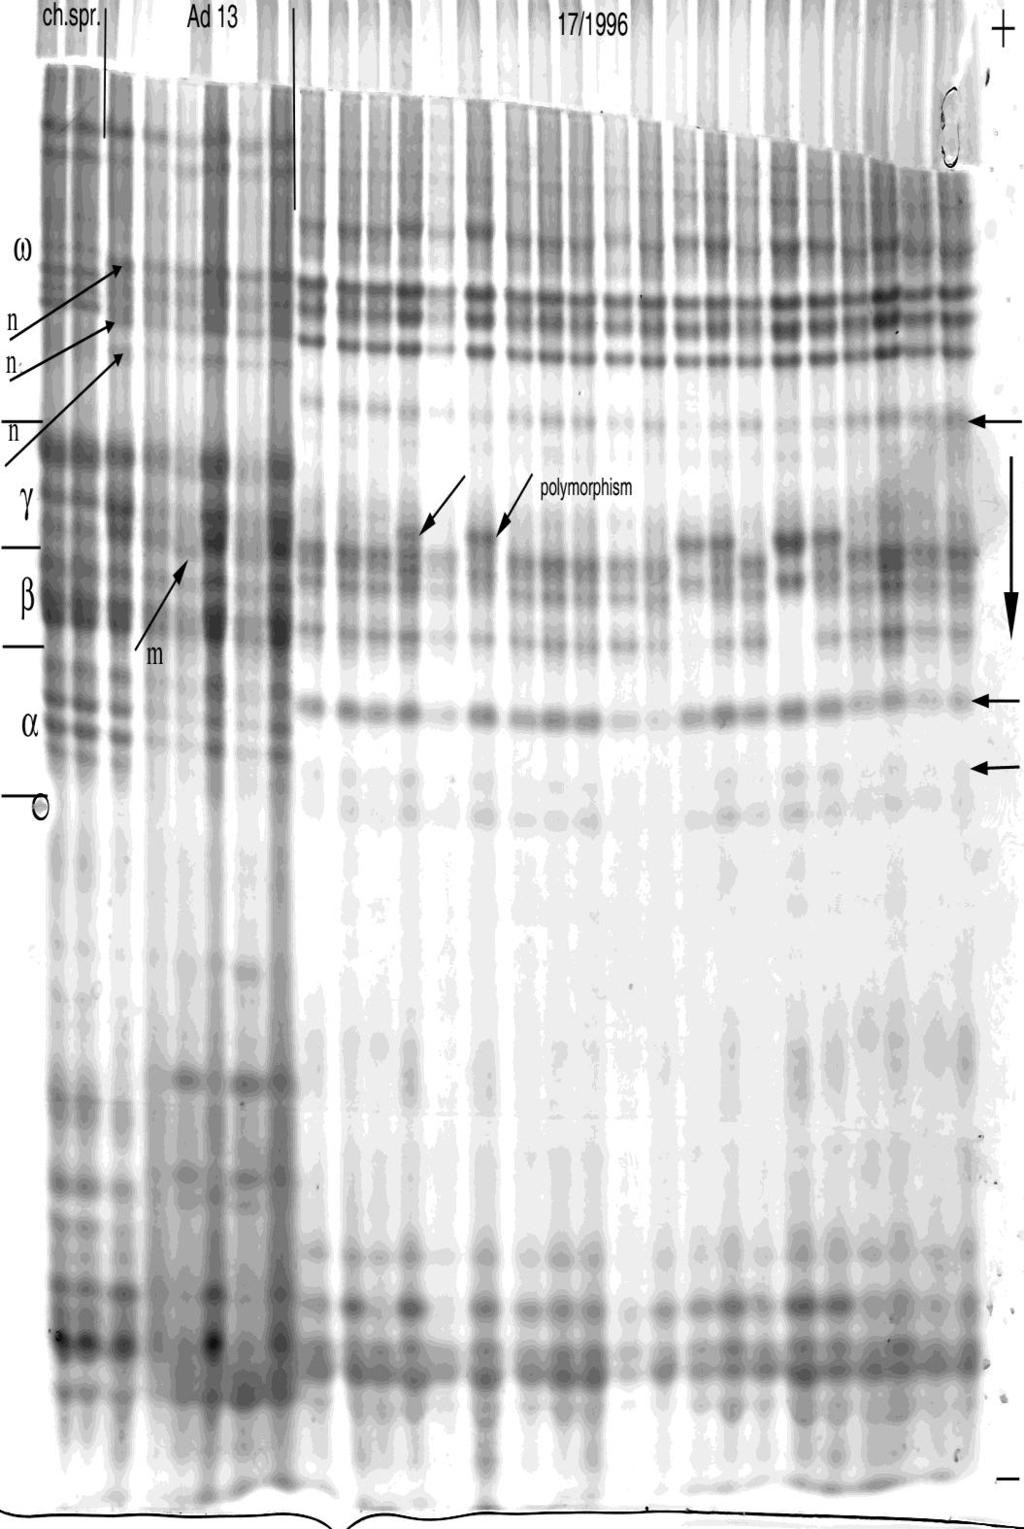 Objaśnienia: ch.spr- pszenica Chinese Spring, Ad 13- pszenżyto Ad 17, 17/1996- linia wsobna 17/1996. α, β, γ, ω- strefy spektrum obrazu białka.